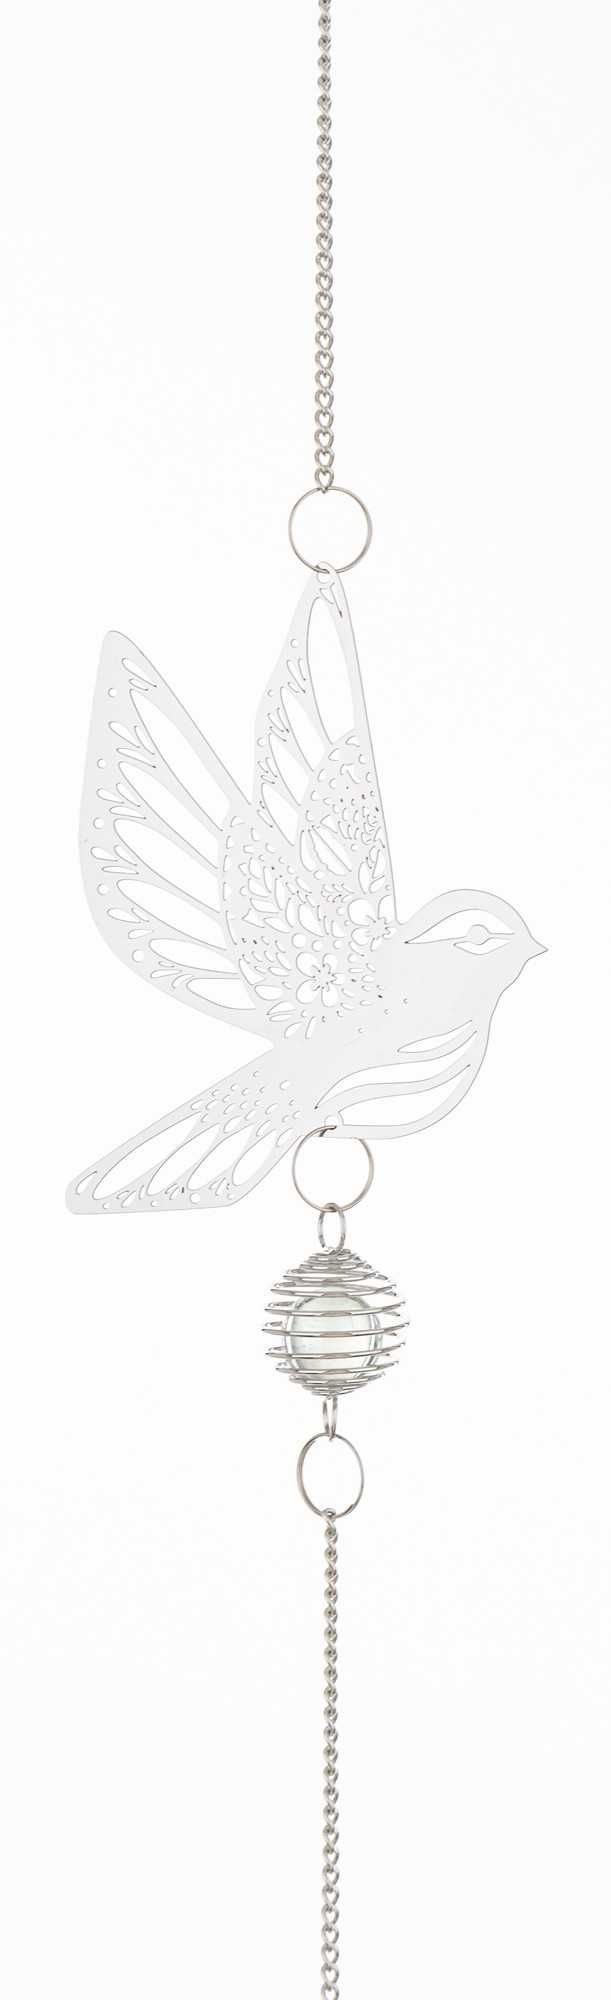 Dekoracja wisząca metalowa srebrna ozdobna Ptaszek 80 cm